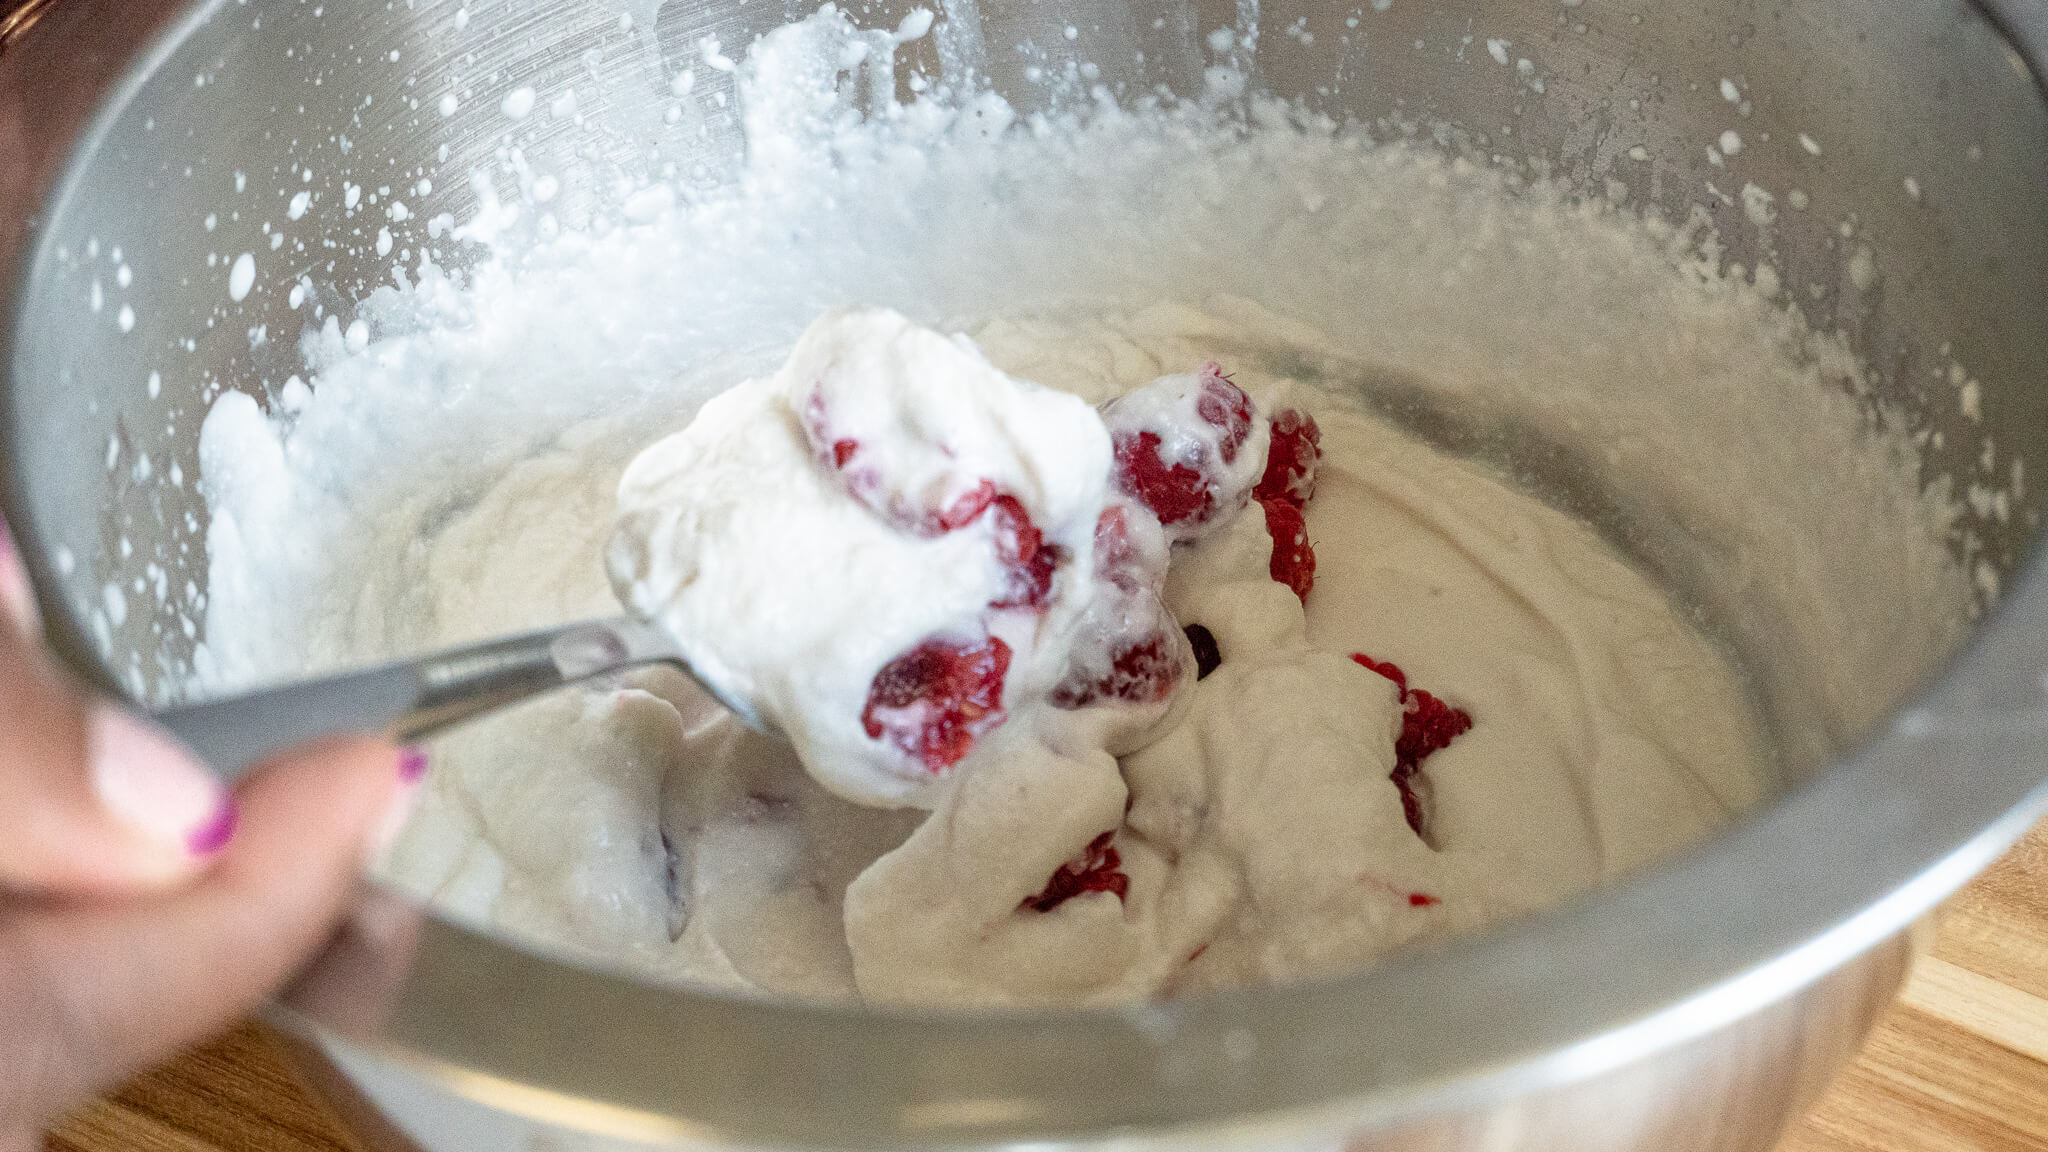 raspberries folded into non-dairy ice cream